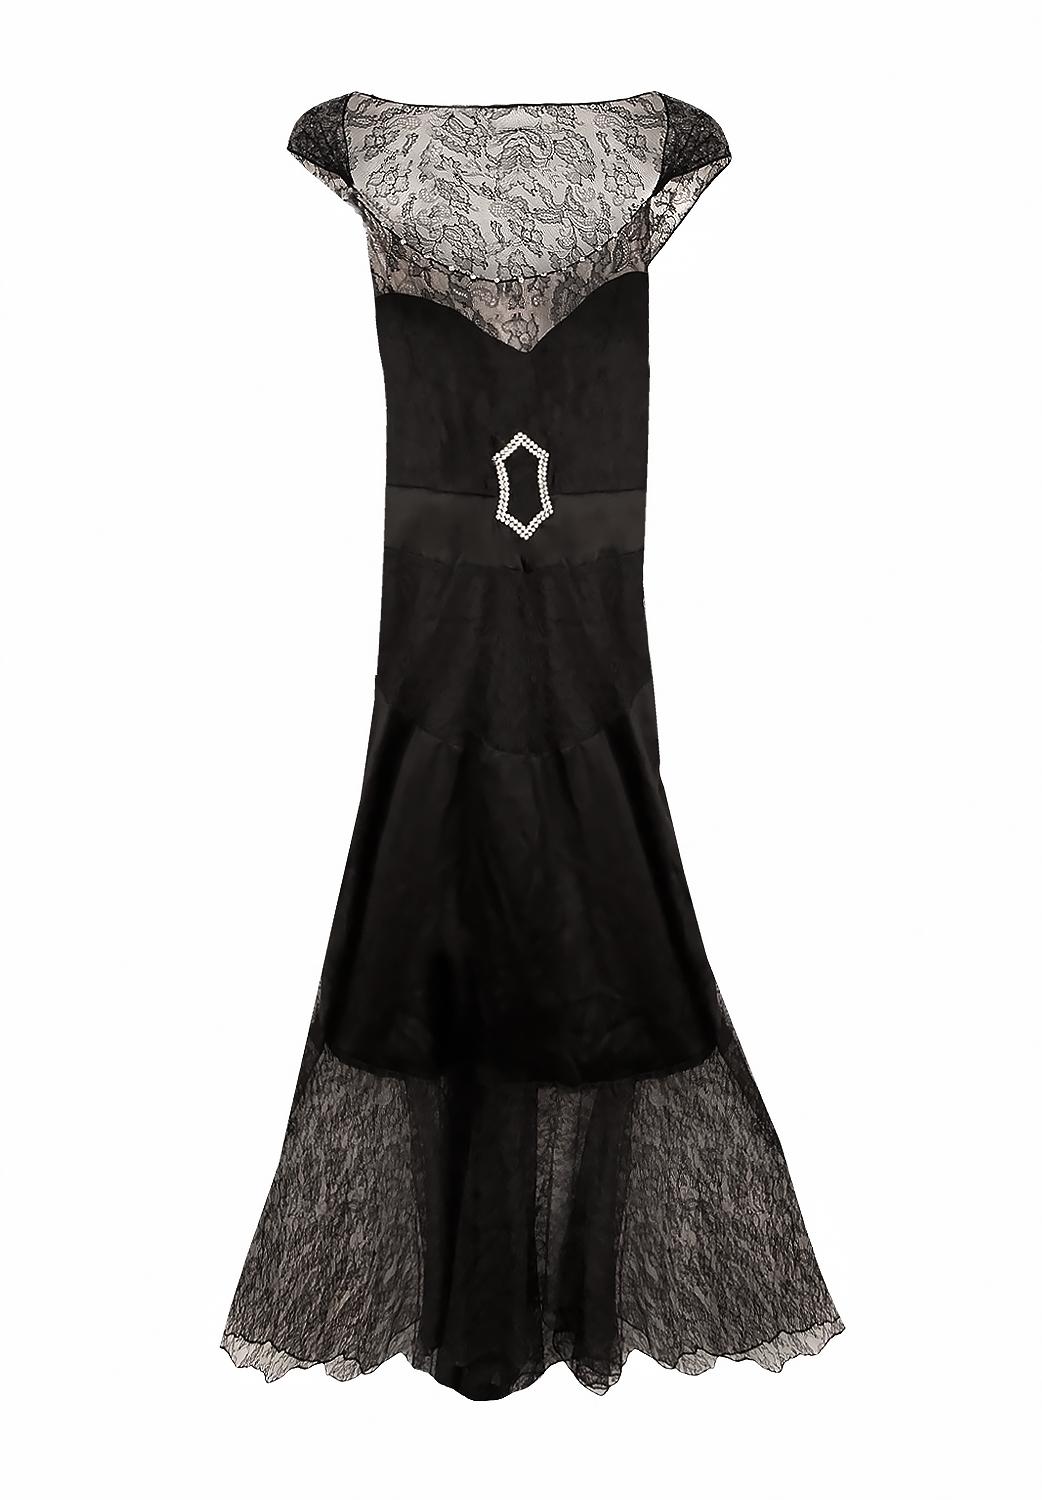 Il s'agit d'une très rare robe de couture Chanel des années 1940. 
Robe à la silhouette droite composée d'une jupe et d'un chemisier, délicat dos plongeant orné d'un nœud.
Matière : soie, dentelle 
Période : Années 1940, trouvaille de collection
La